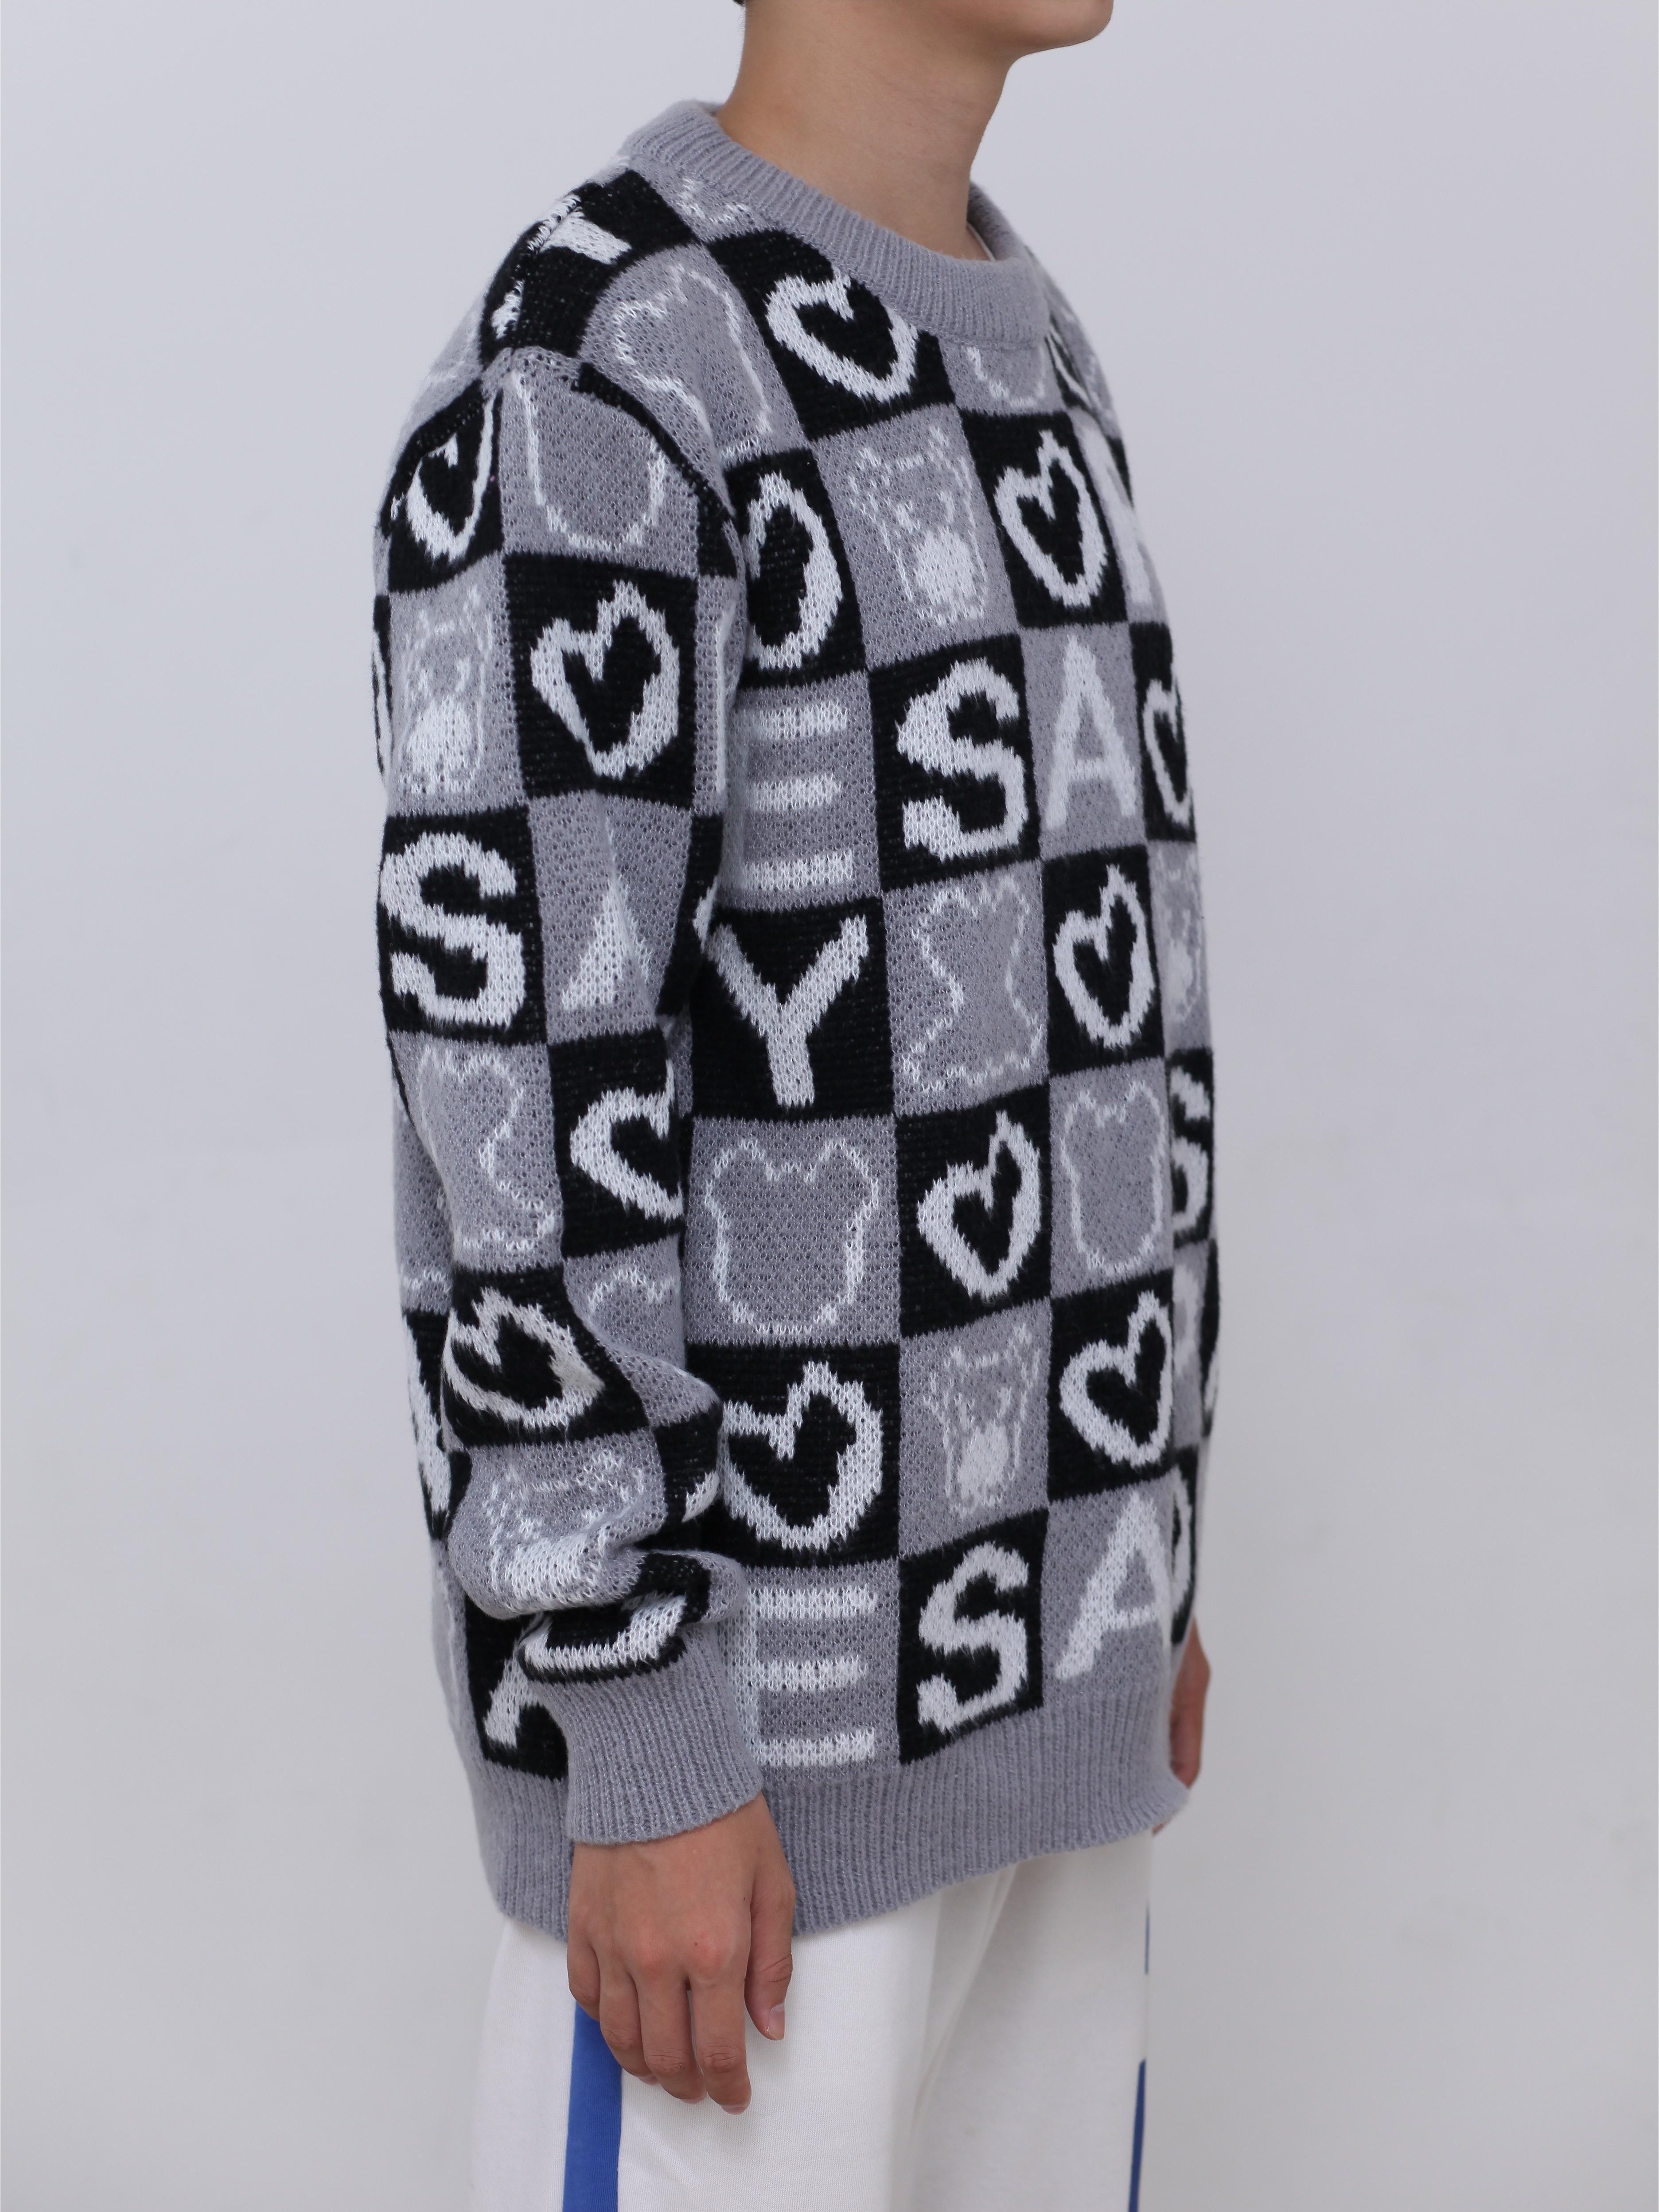 Louis Vuitton Black Crewneck Sweaters for Men